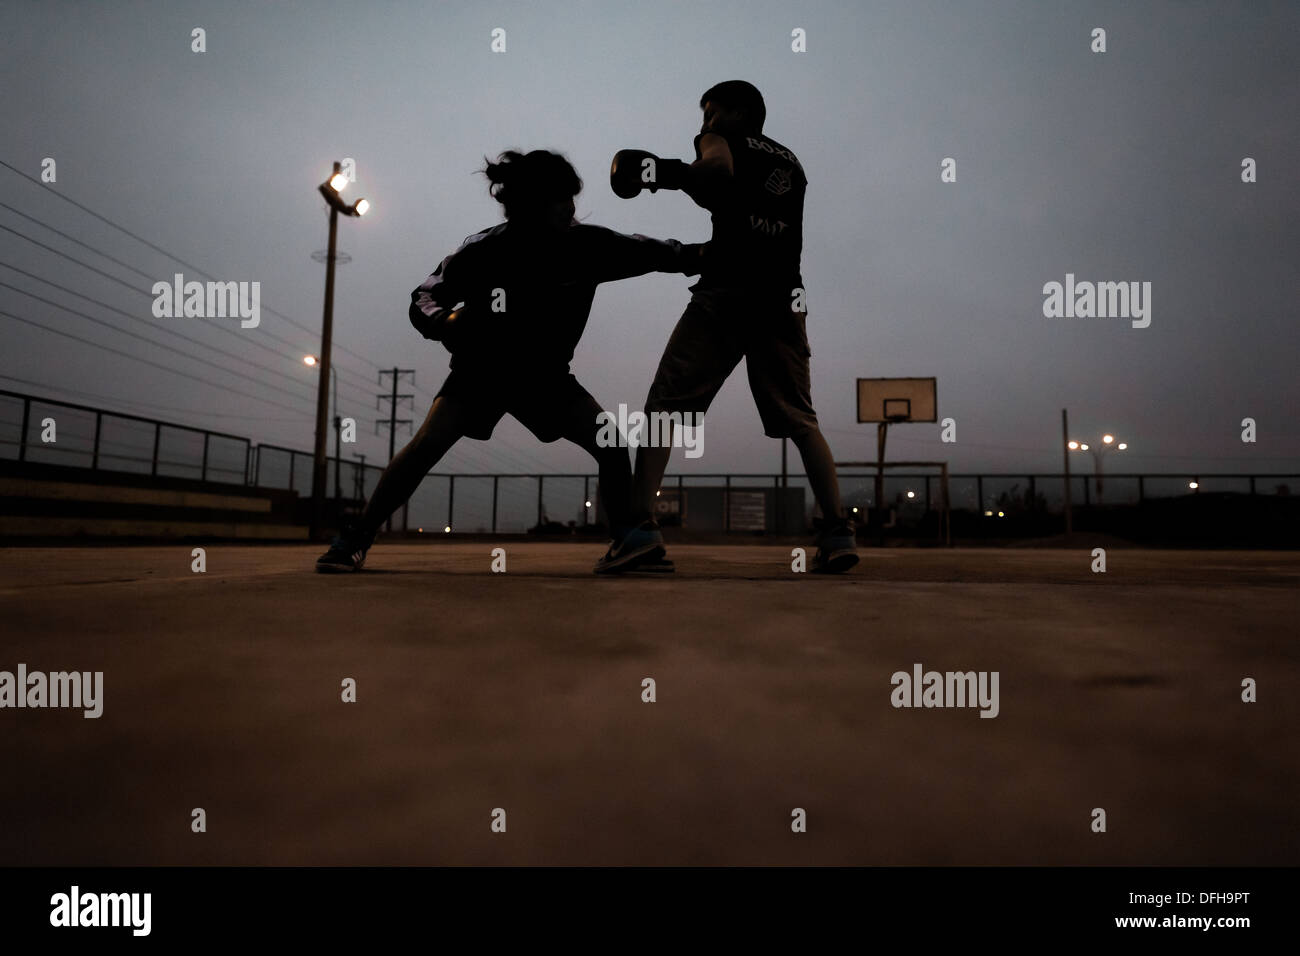 Les jeunes péruviens vu au cours de l'exercice au combat de boxe boxeo vmt boxing club dans un sport en plein air à Lima, Pérou. Banque D'Images